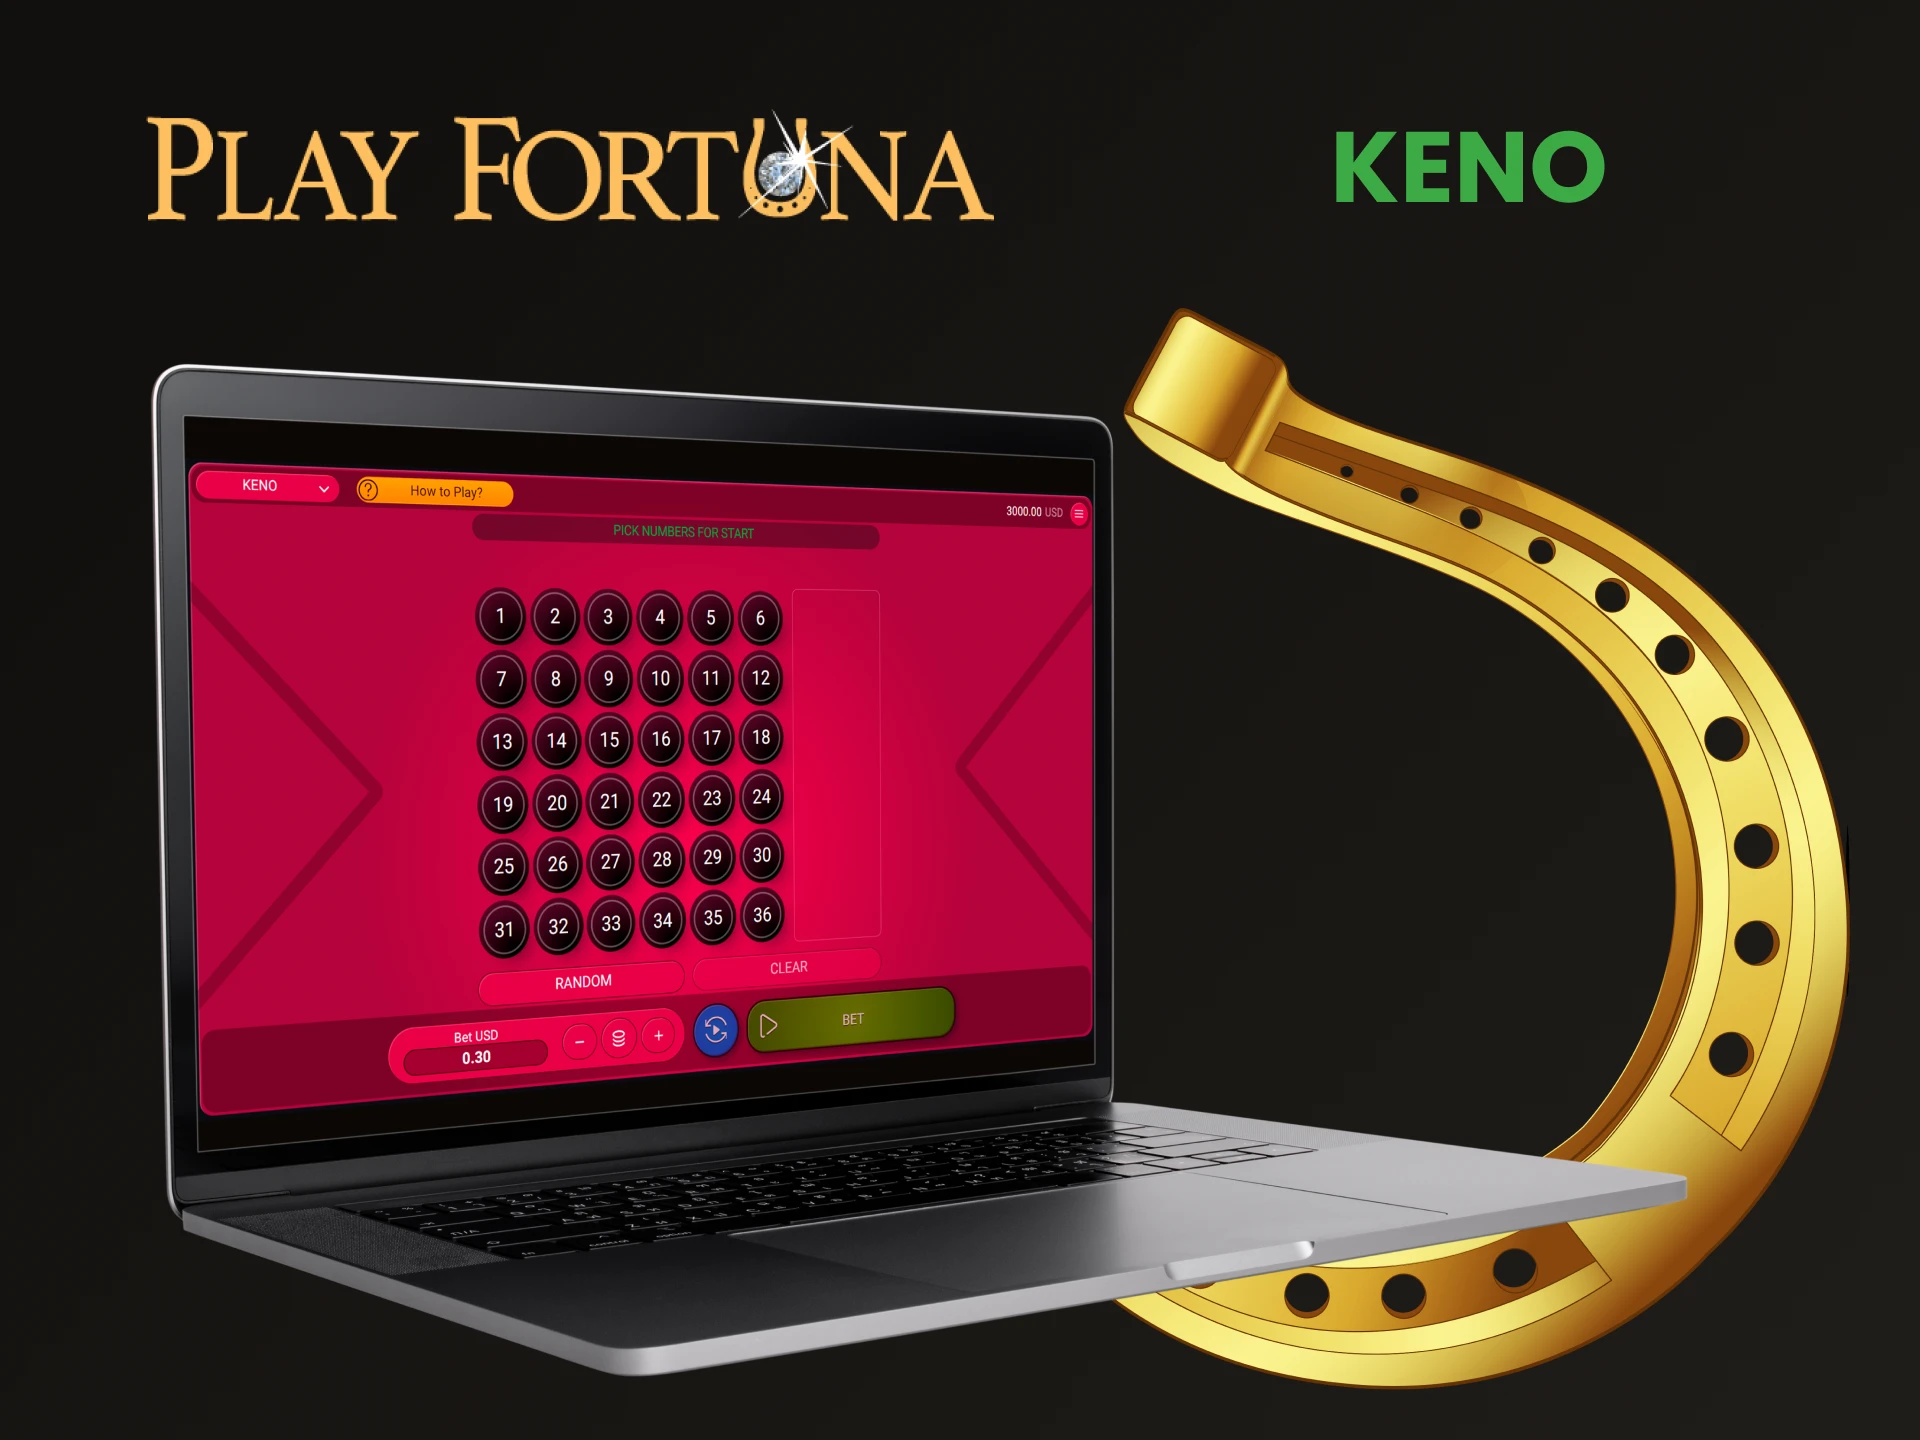 Para jogos no Play Fortuna, escolha Keno.